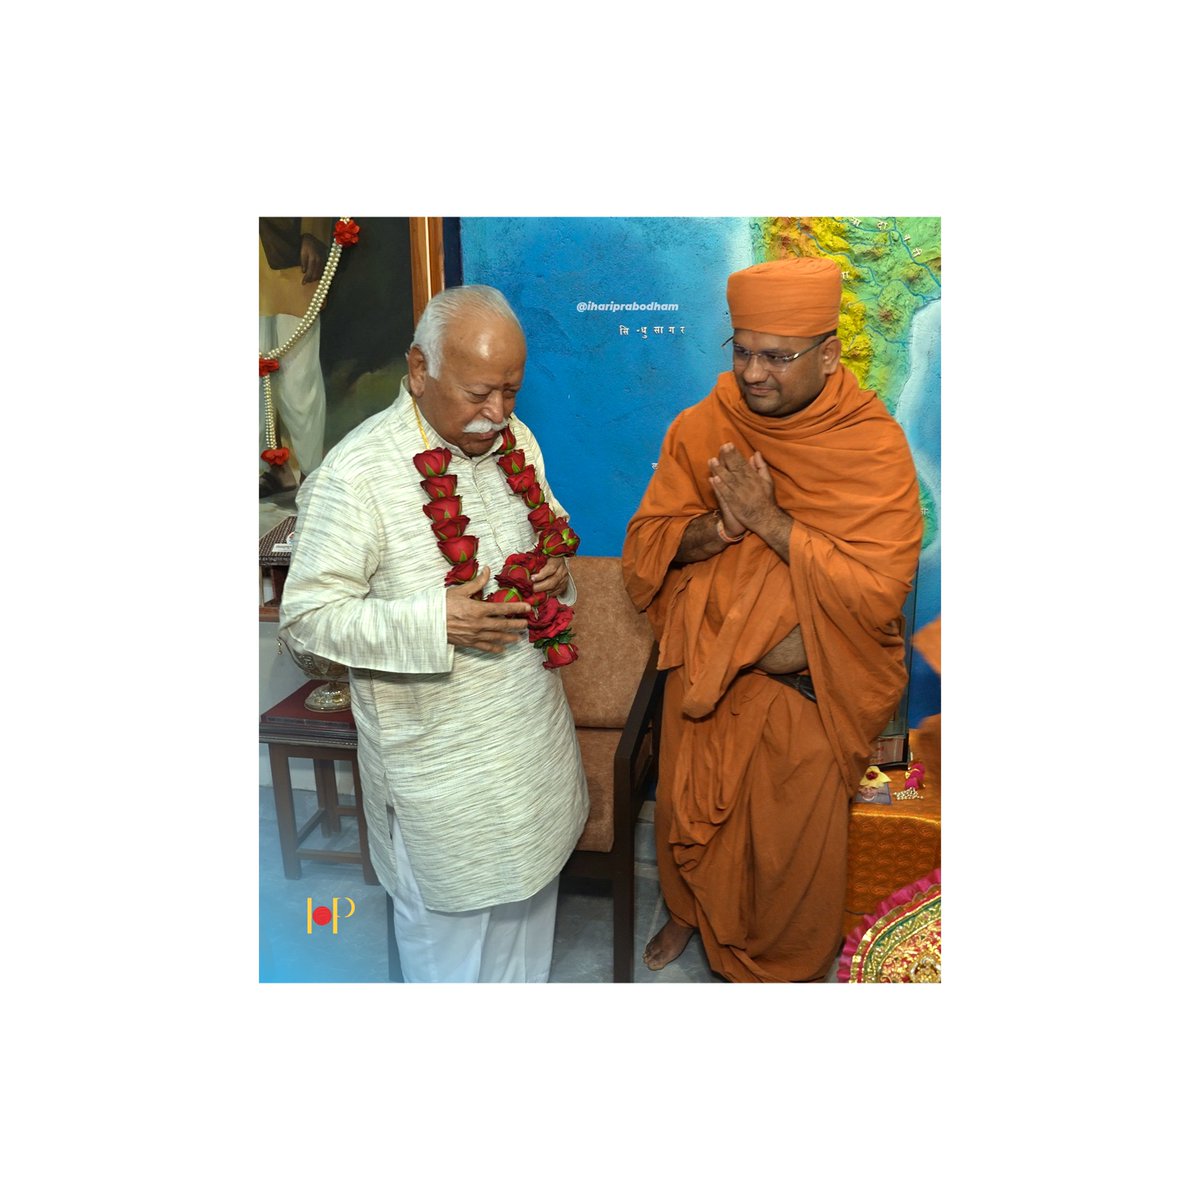 चक्रवर्तियों की संतान, लेकर जगद्गुरु का ज्ञान , बढ़े चले तो अरुण विहान, करने को आए अभिषेक, प्रश्न बहुत से उत्तर एक, भारत माता की जय- डॉ. मोहन भागवत, सरसंघचालक, राष्ट्रीय स्वयंसेवक संघ 
Guruhari PrabodhJivan Swamiji & Param Poojaniya Sarsanghchalak, Dr Mohan Bhagwat Ji @RSSorg…